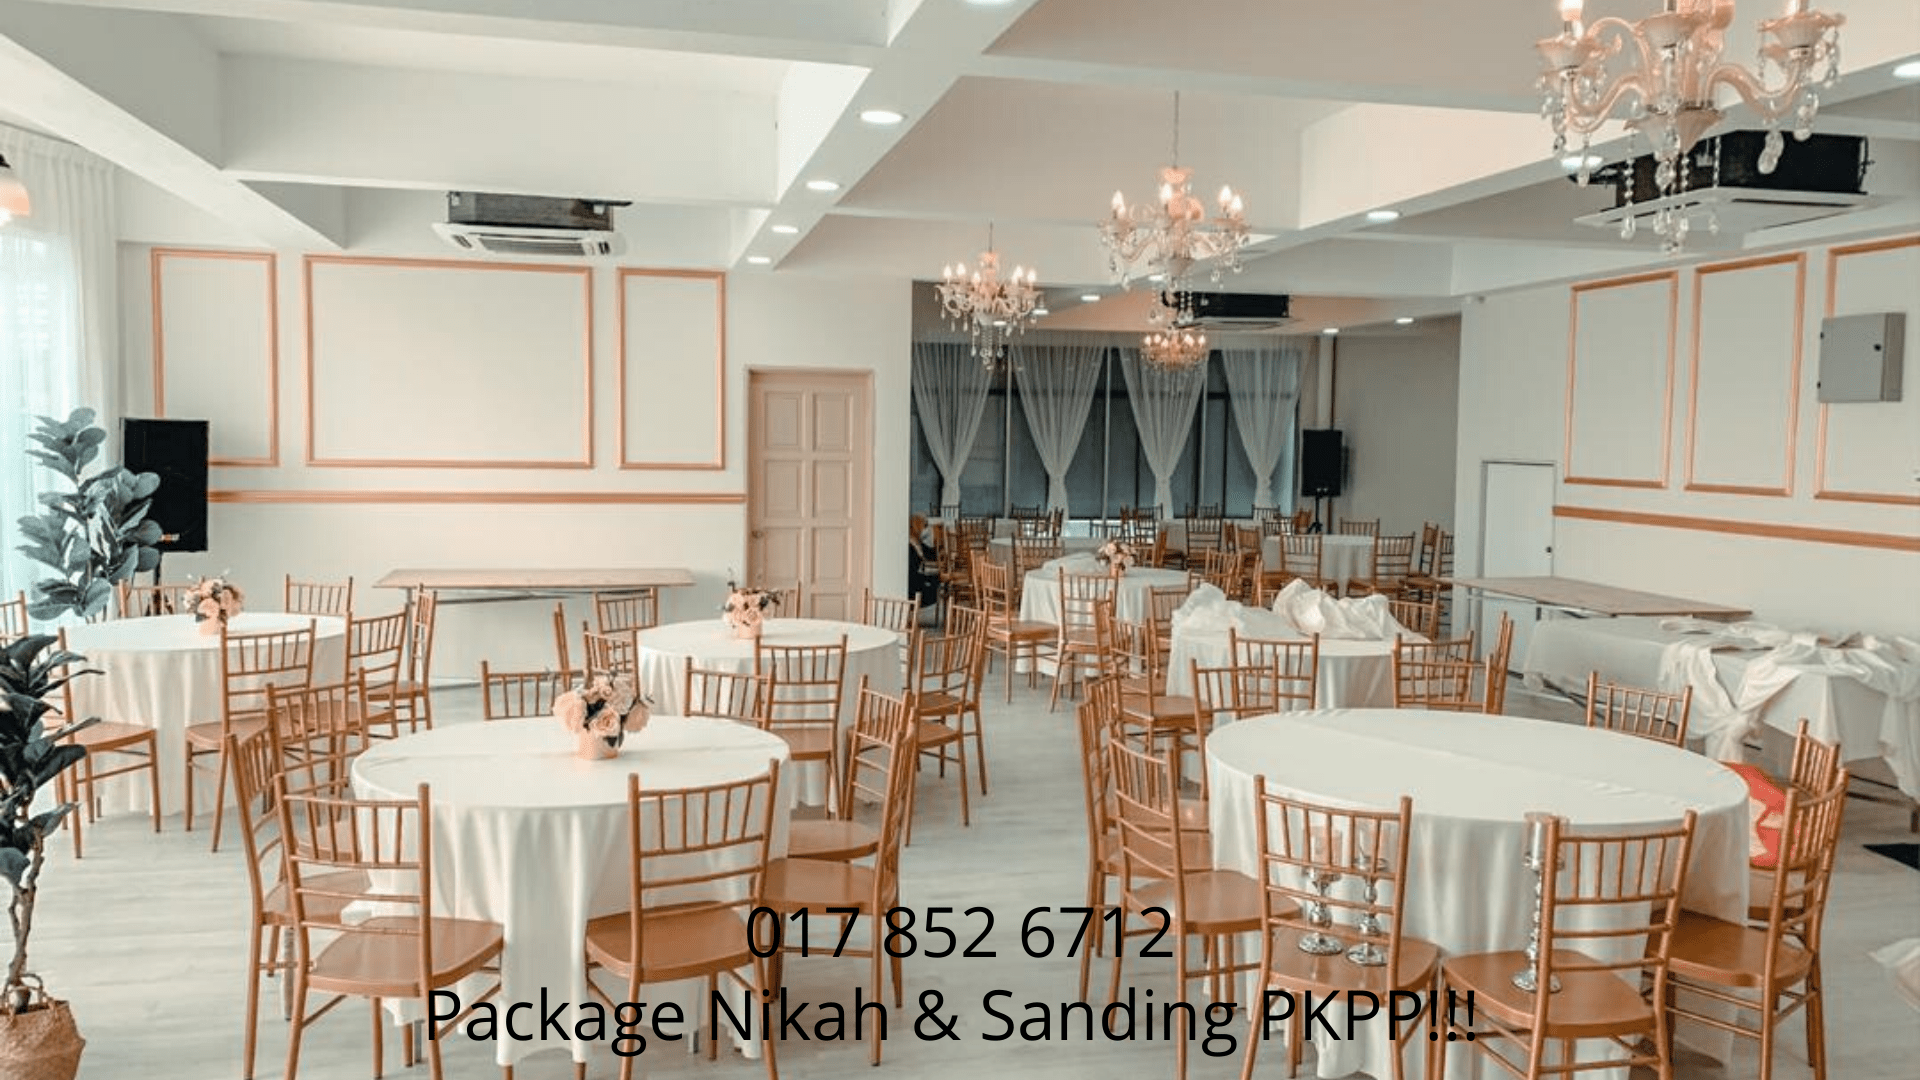 Package-Nikah-&-Sanding-PKPP!!!-0178526712